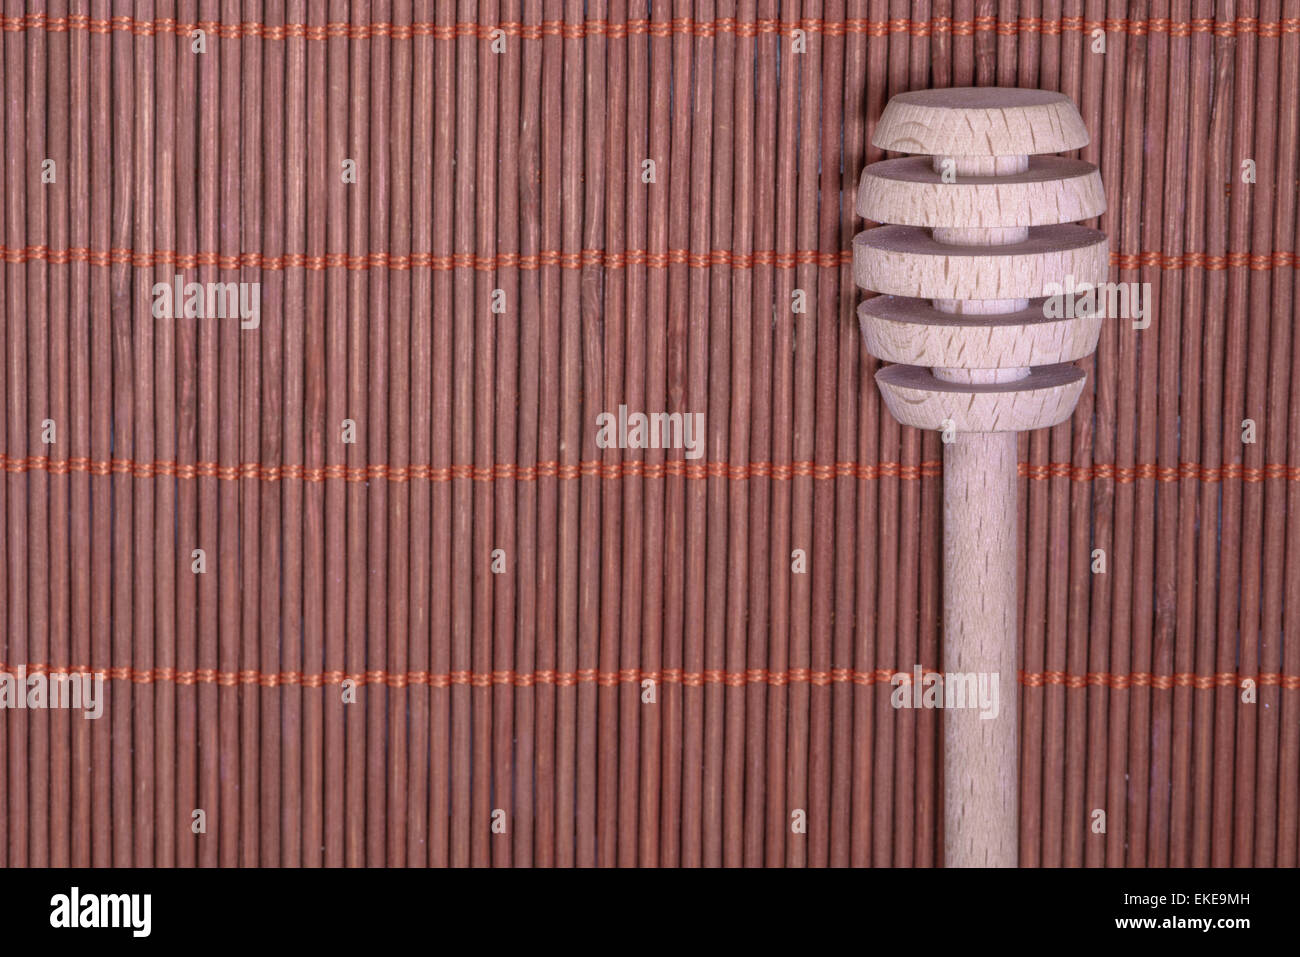 Holz-Honig-Löffel auf einem schönen geflochtenen Teppich als Hintergrund Stockfoto